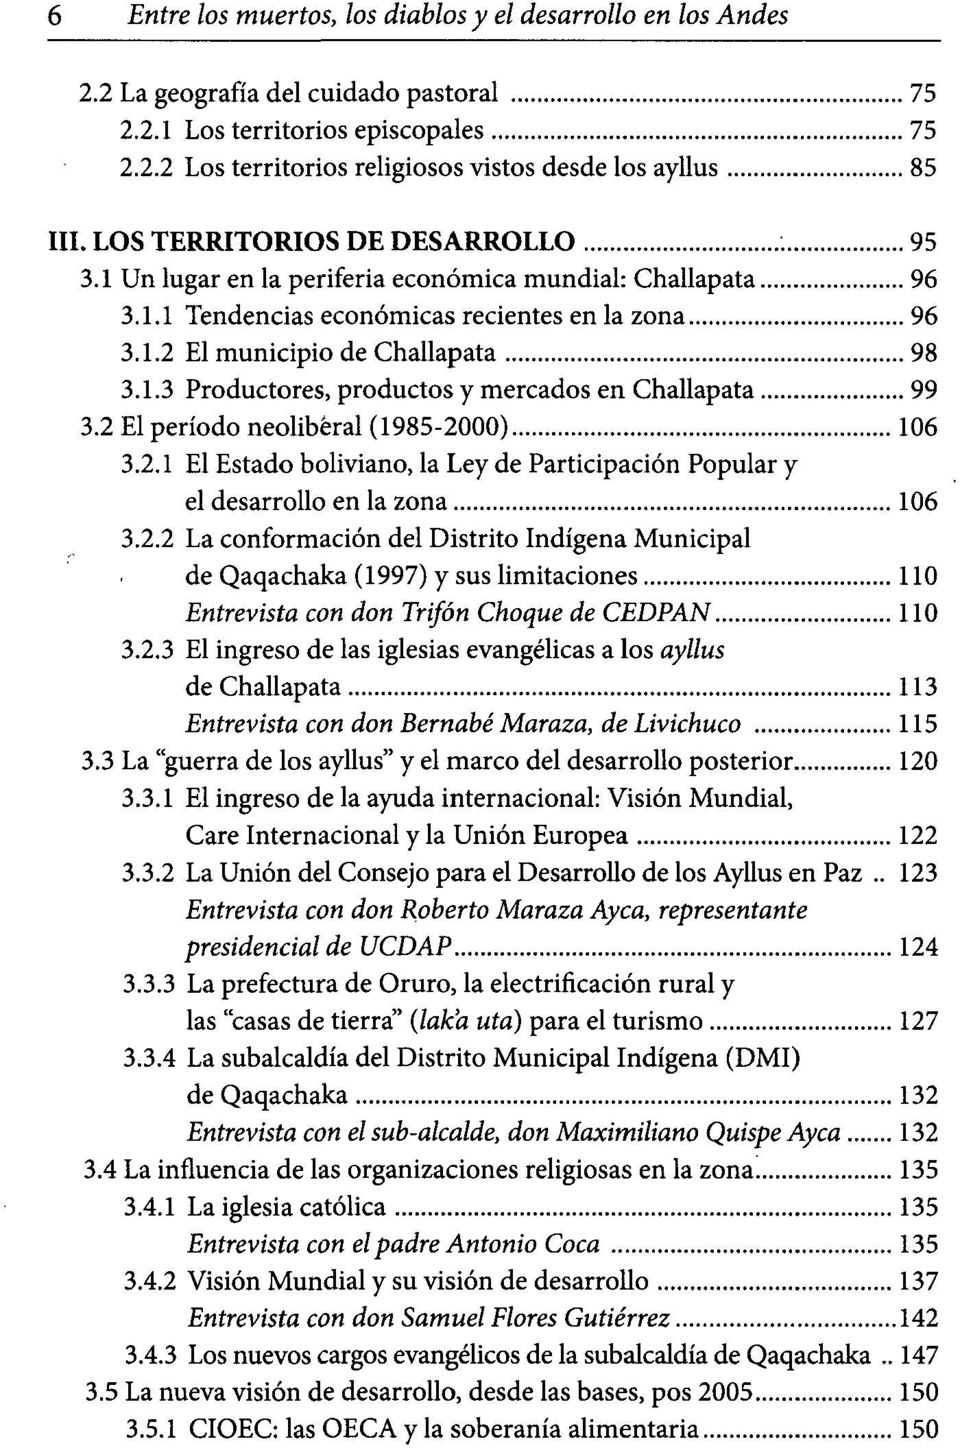 2 El período neoliberal (1985-2000) 106 3.2.1 El Estado boliviano, la Ley de Participación Popular y el desarrollo en la zona 106 3.2.2 La conformación del Distrito Indígena Municipal de Qaqachaka (1997) y sus limitaciones 110 Entrevista con don Trifón Choque de CEDPAN 110 3.